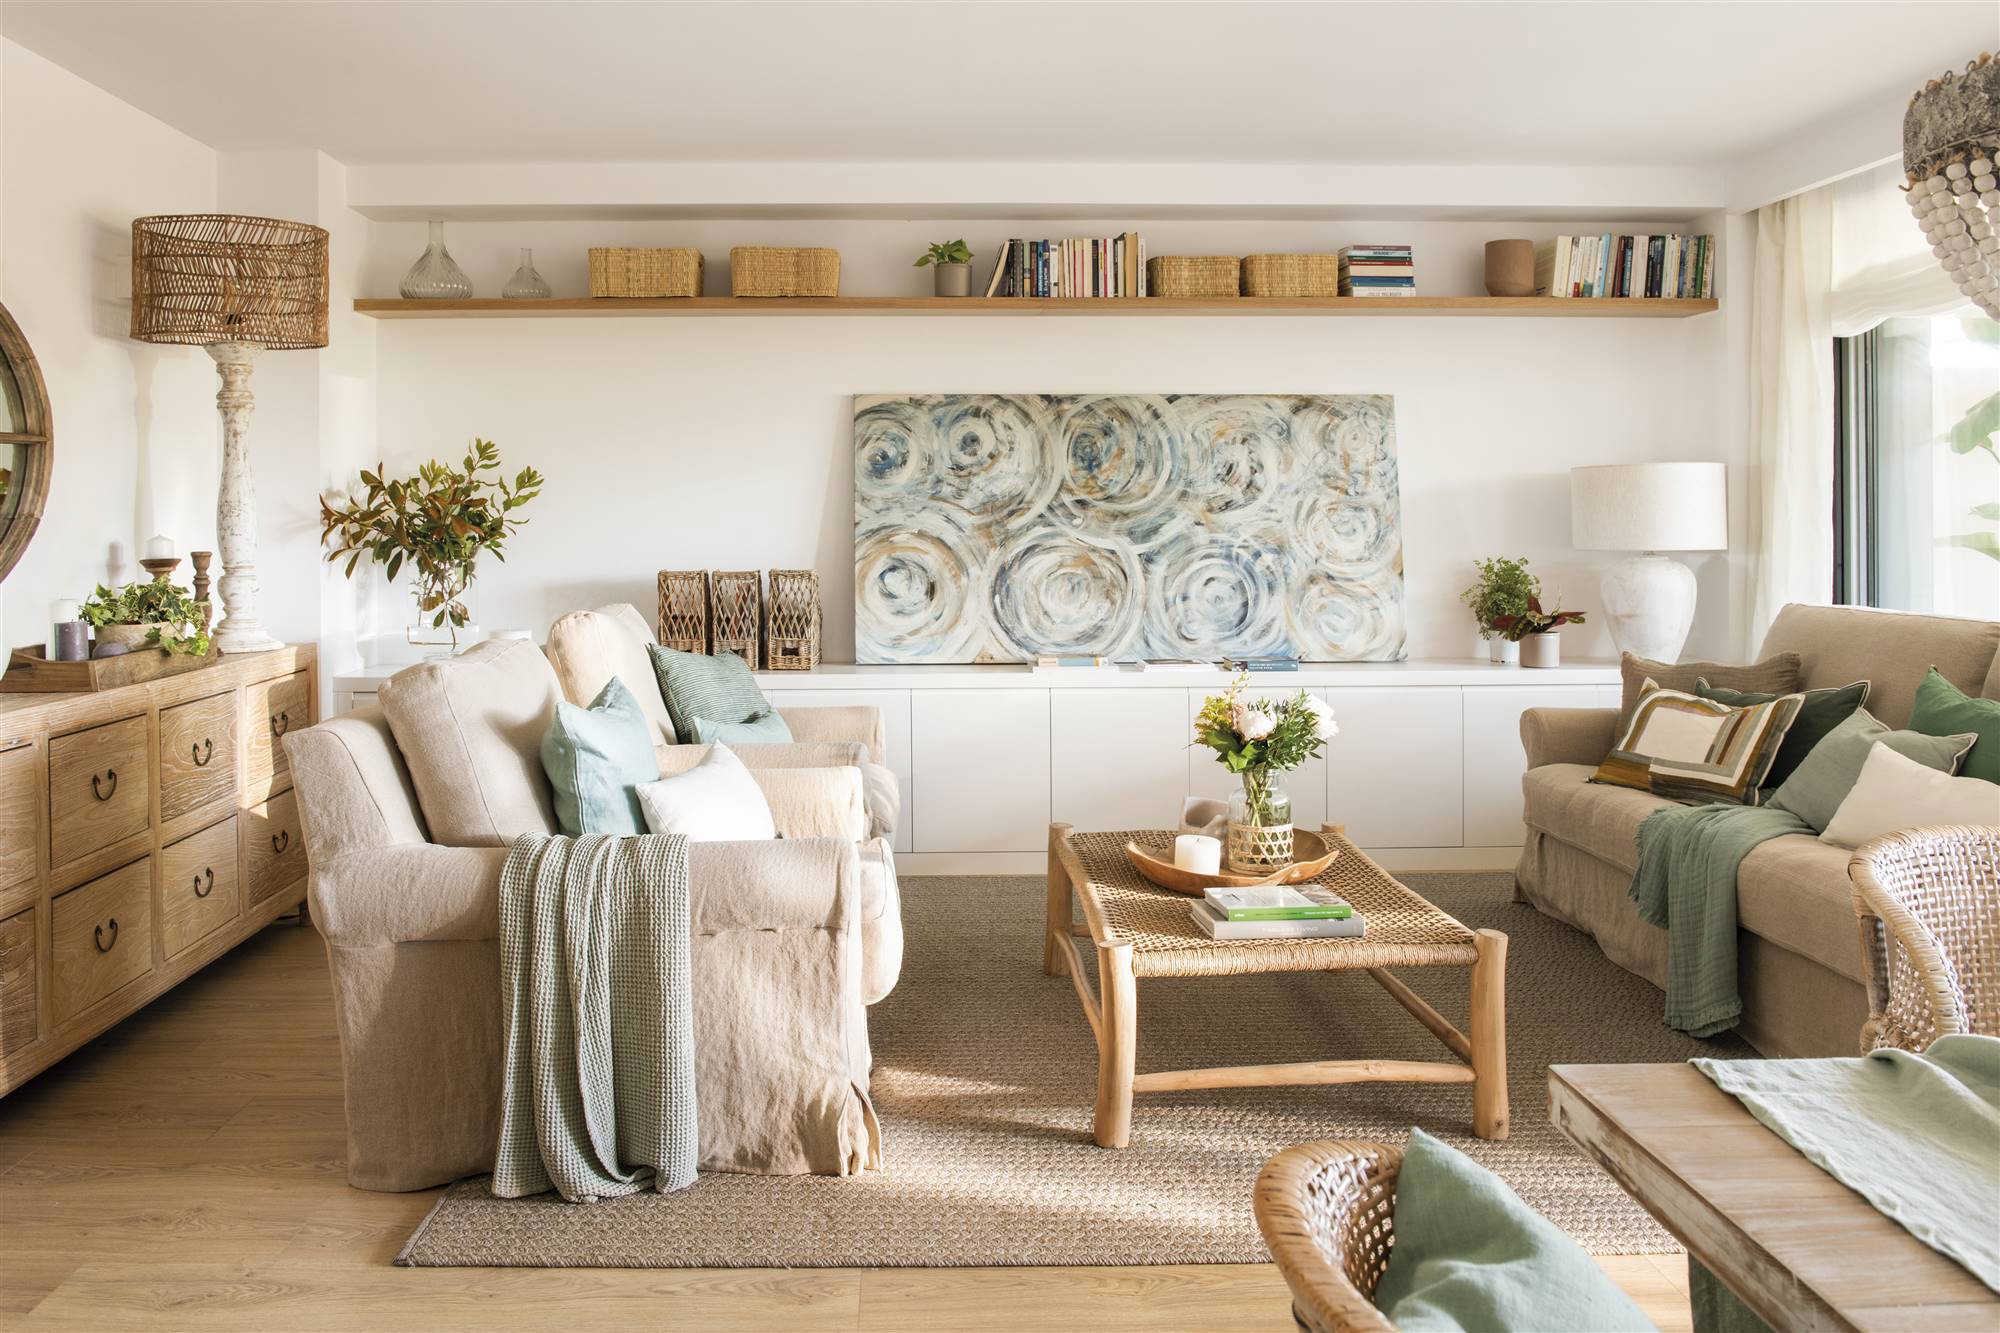 Salón con sofás enfrentados de color beige y mueble bajo blanco con almacenaje.